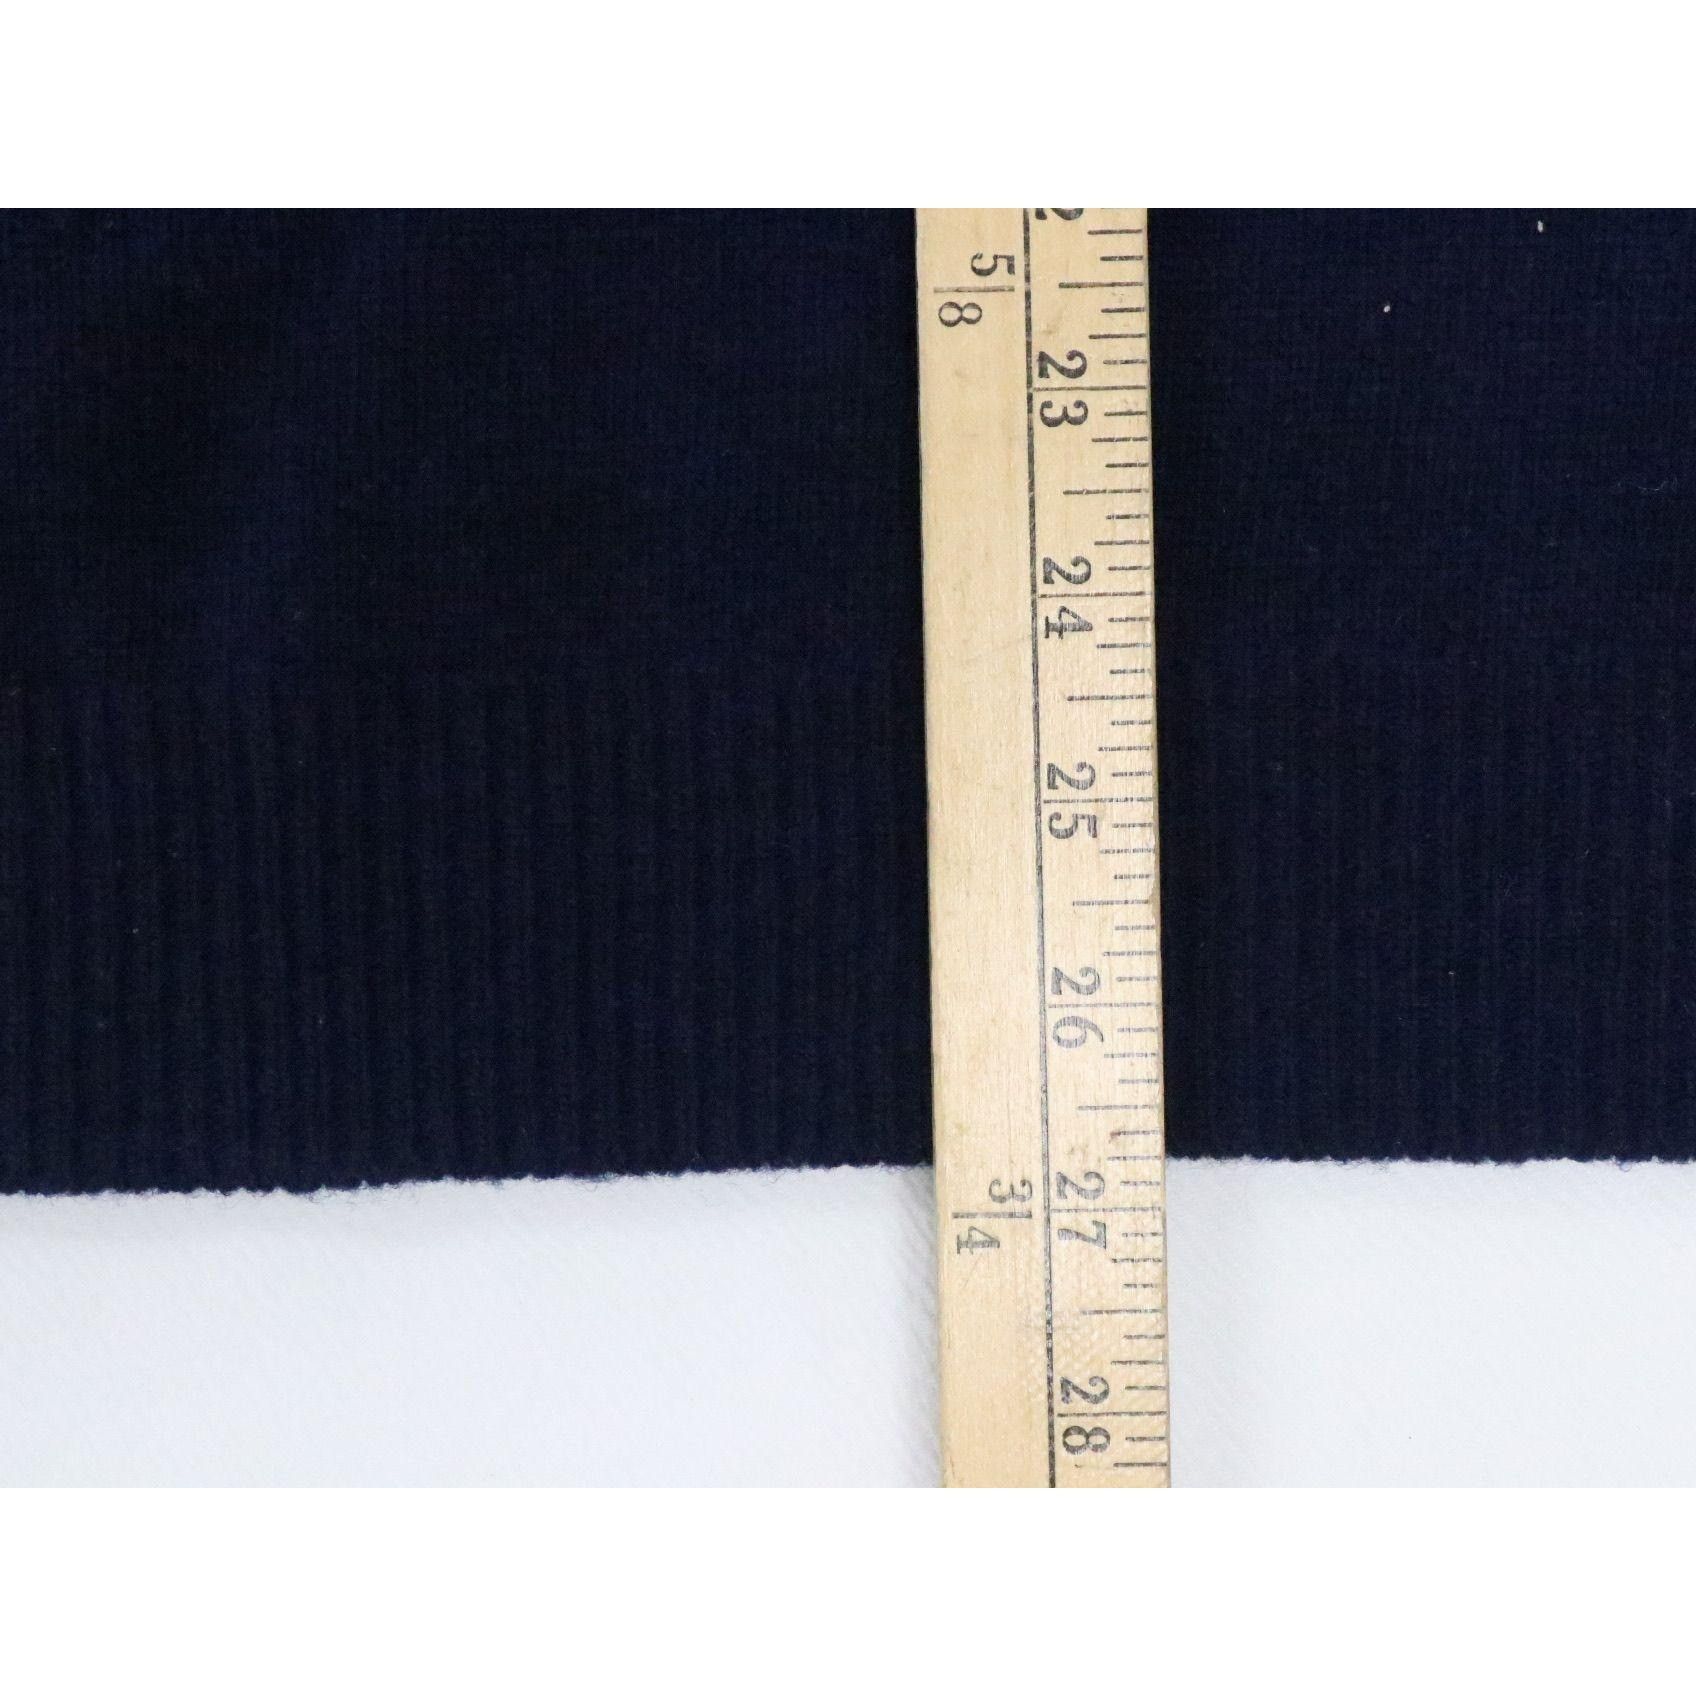 Sportswear Sportswear by Revere Blue Lambs Wool Large Sleeveless Vest Size US L / EU 52-54 / 3 - 4 Thumbnail